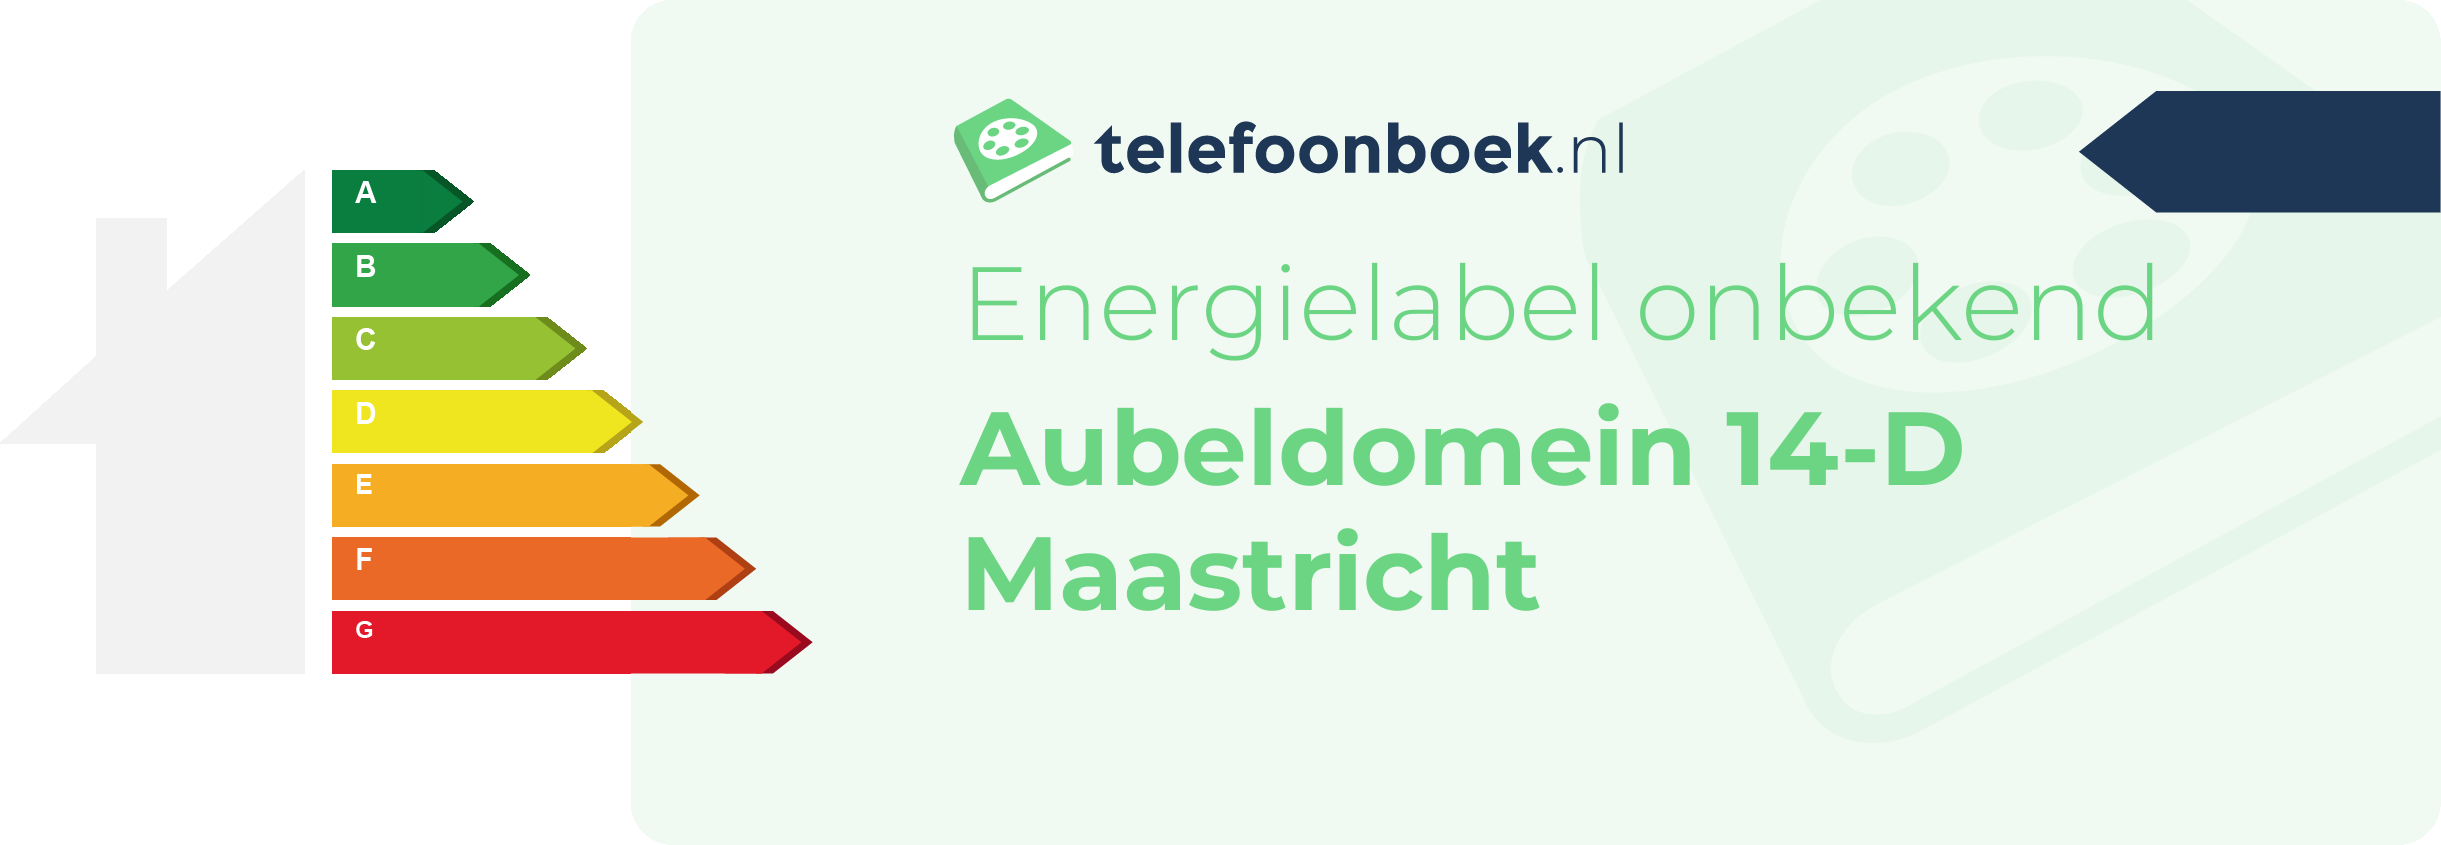 Energielabel Aubeldomein 14-D Maastricht